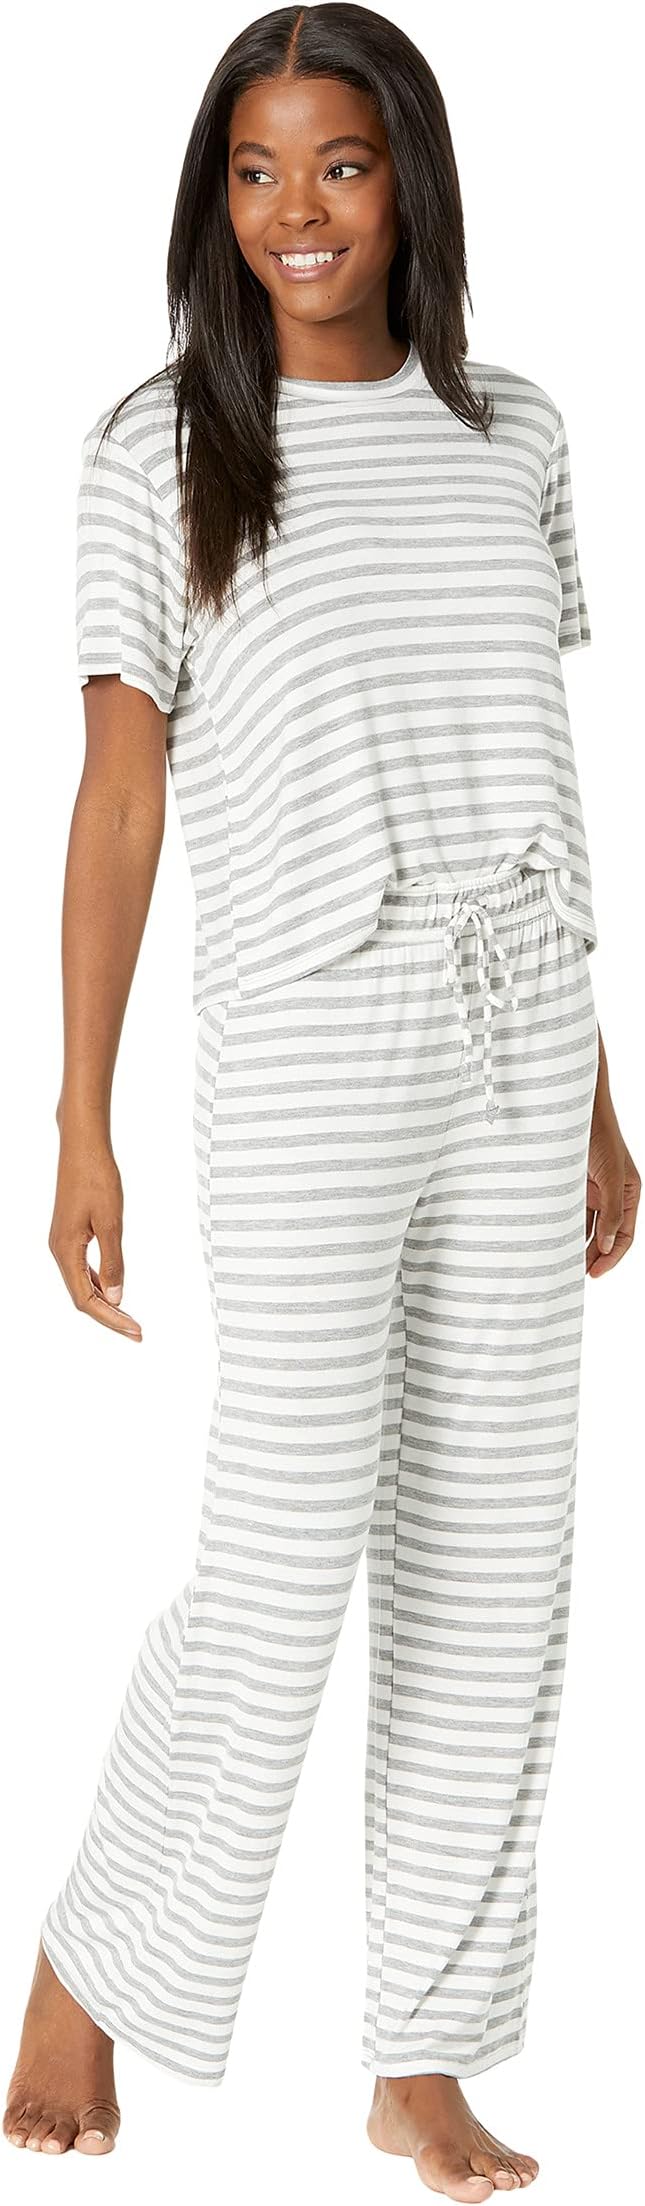 Полностью американский пижамный комплект из джерси Honeydew Intimates, цвет Ivory Stripe